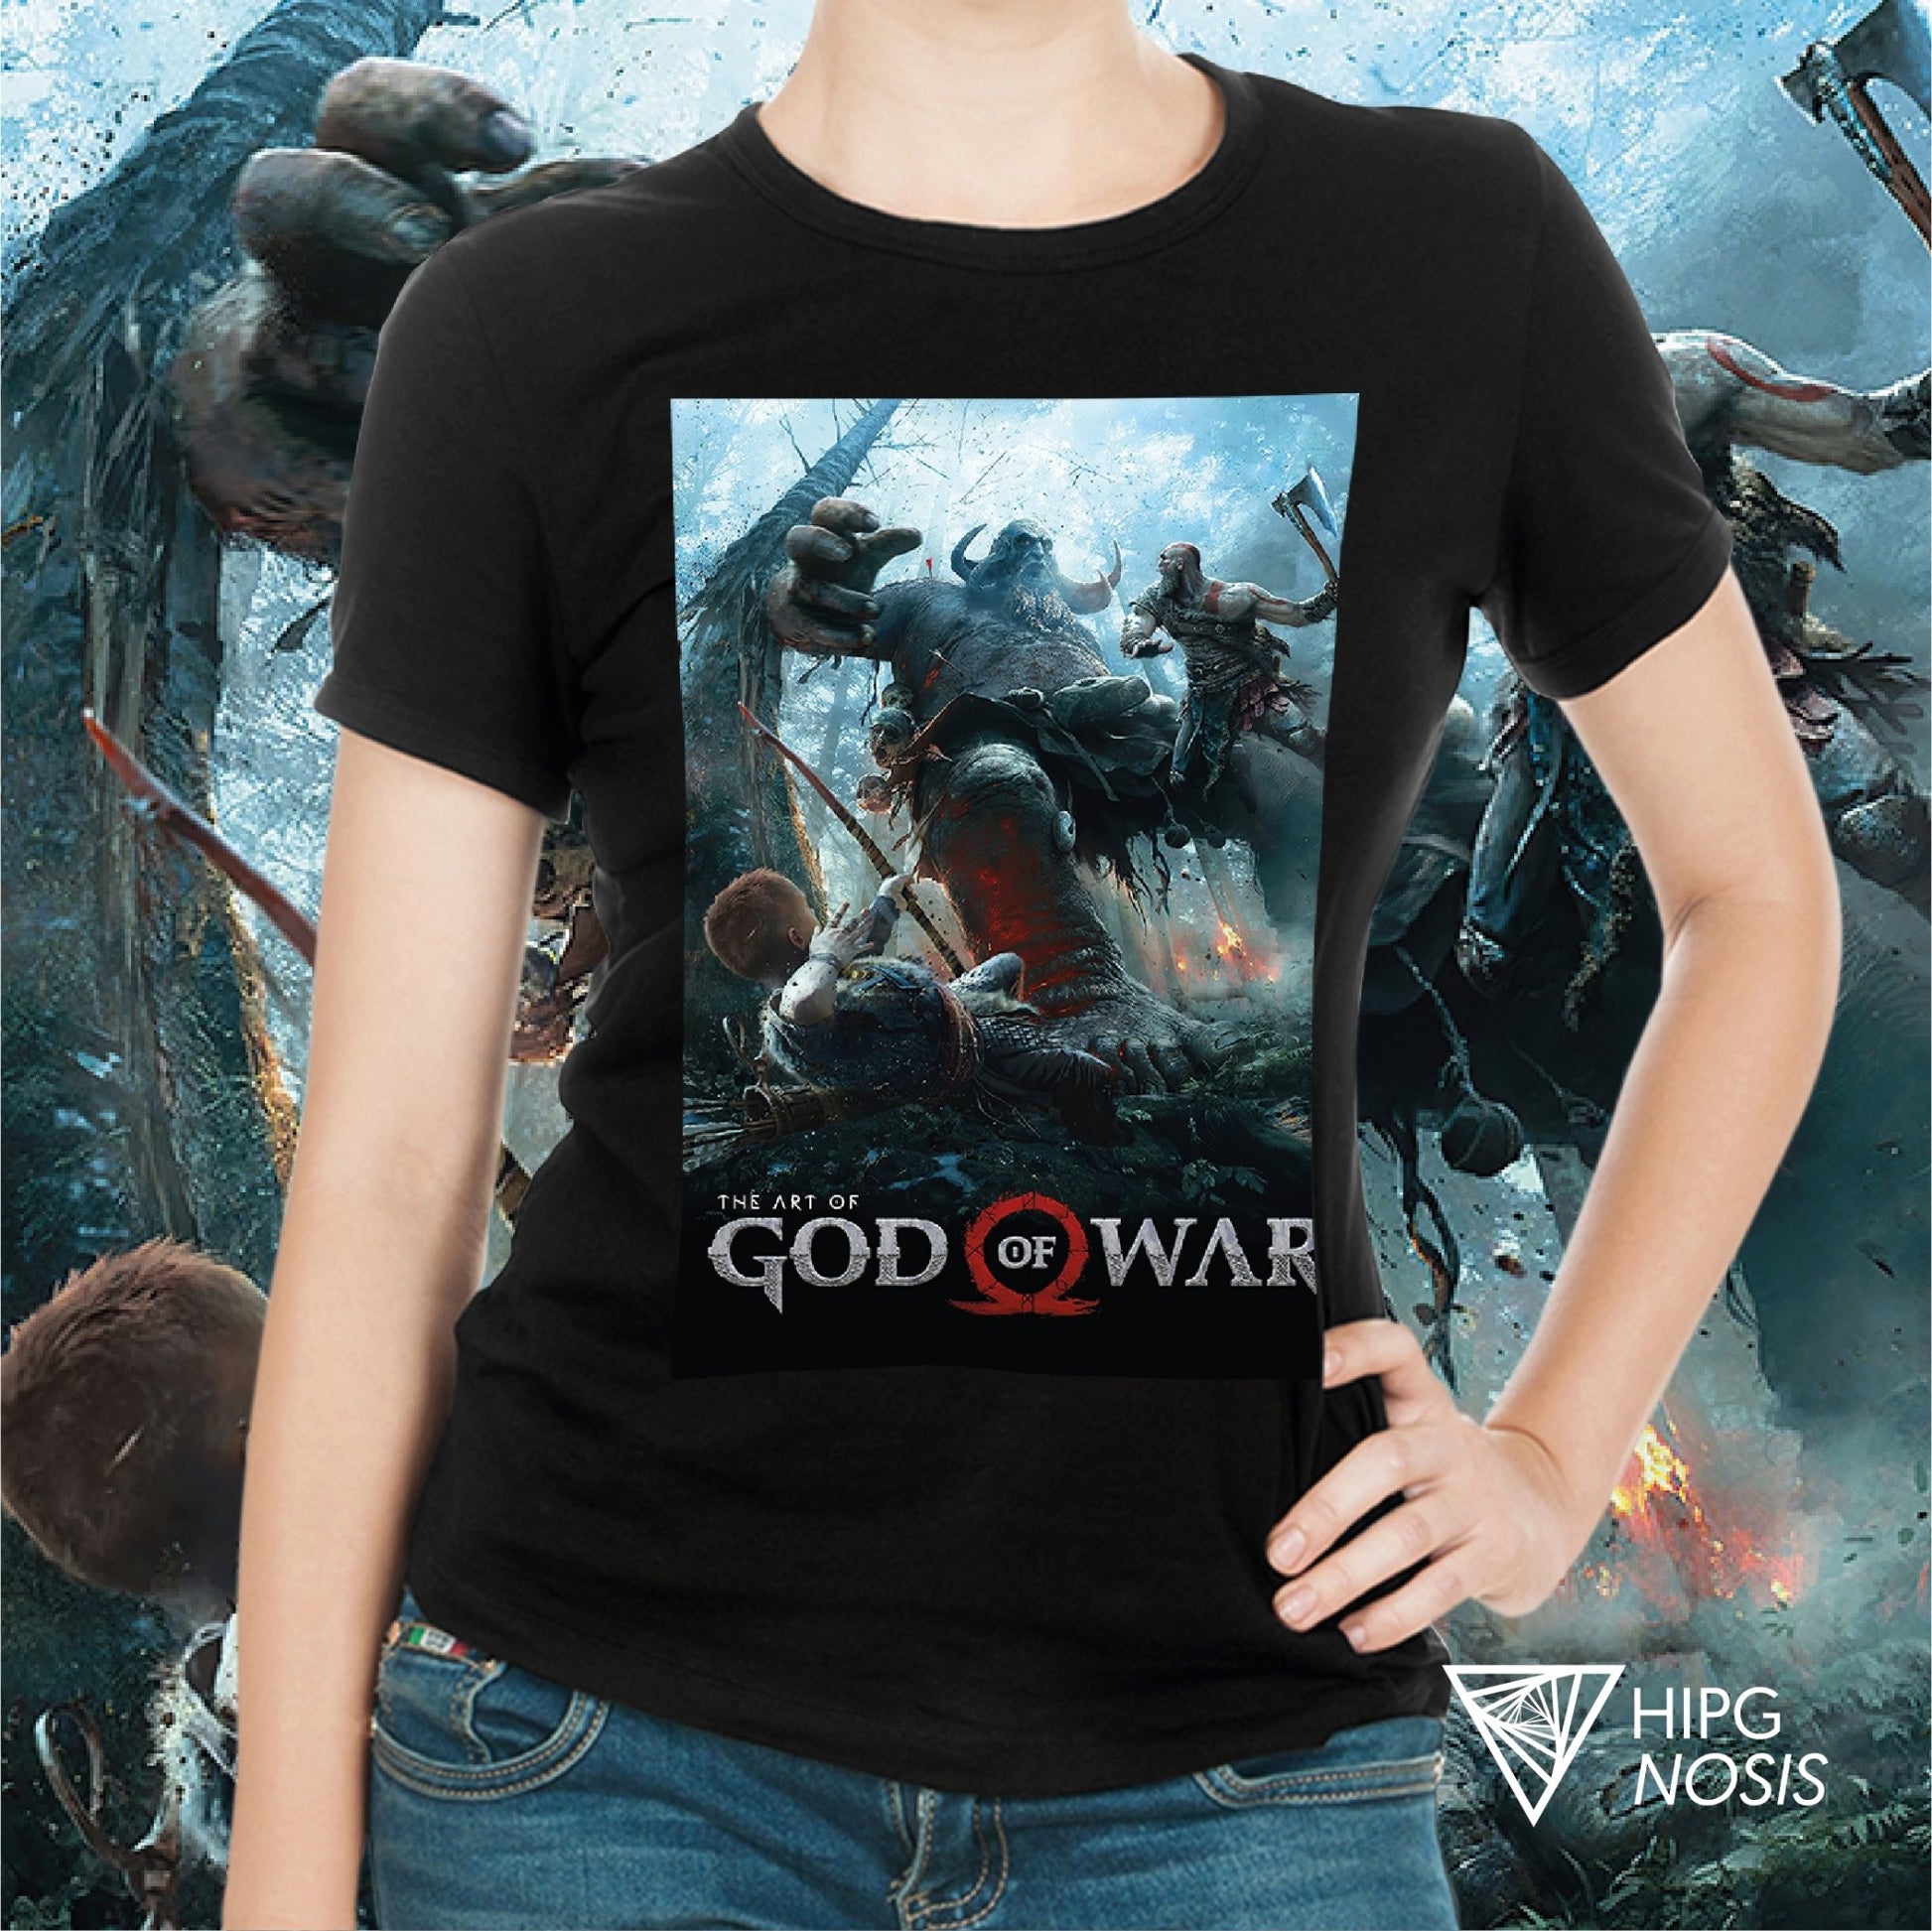 God of War 01 - Hipgnosis